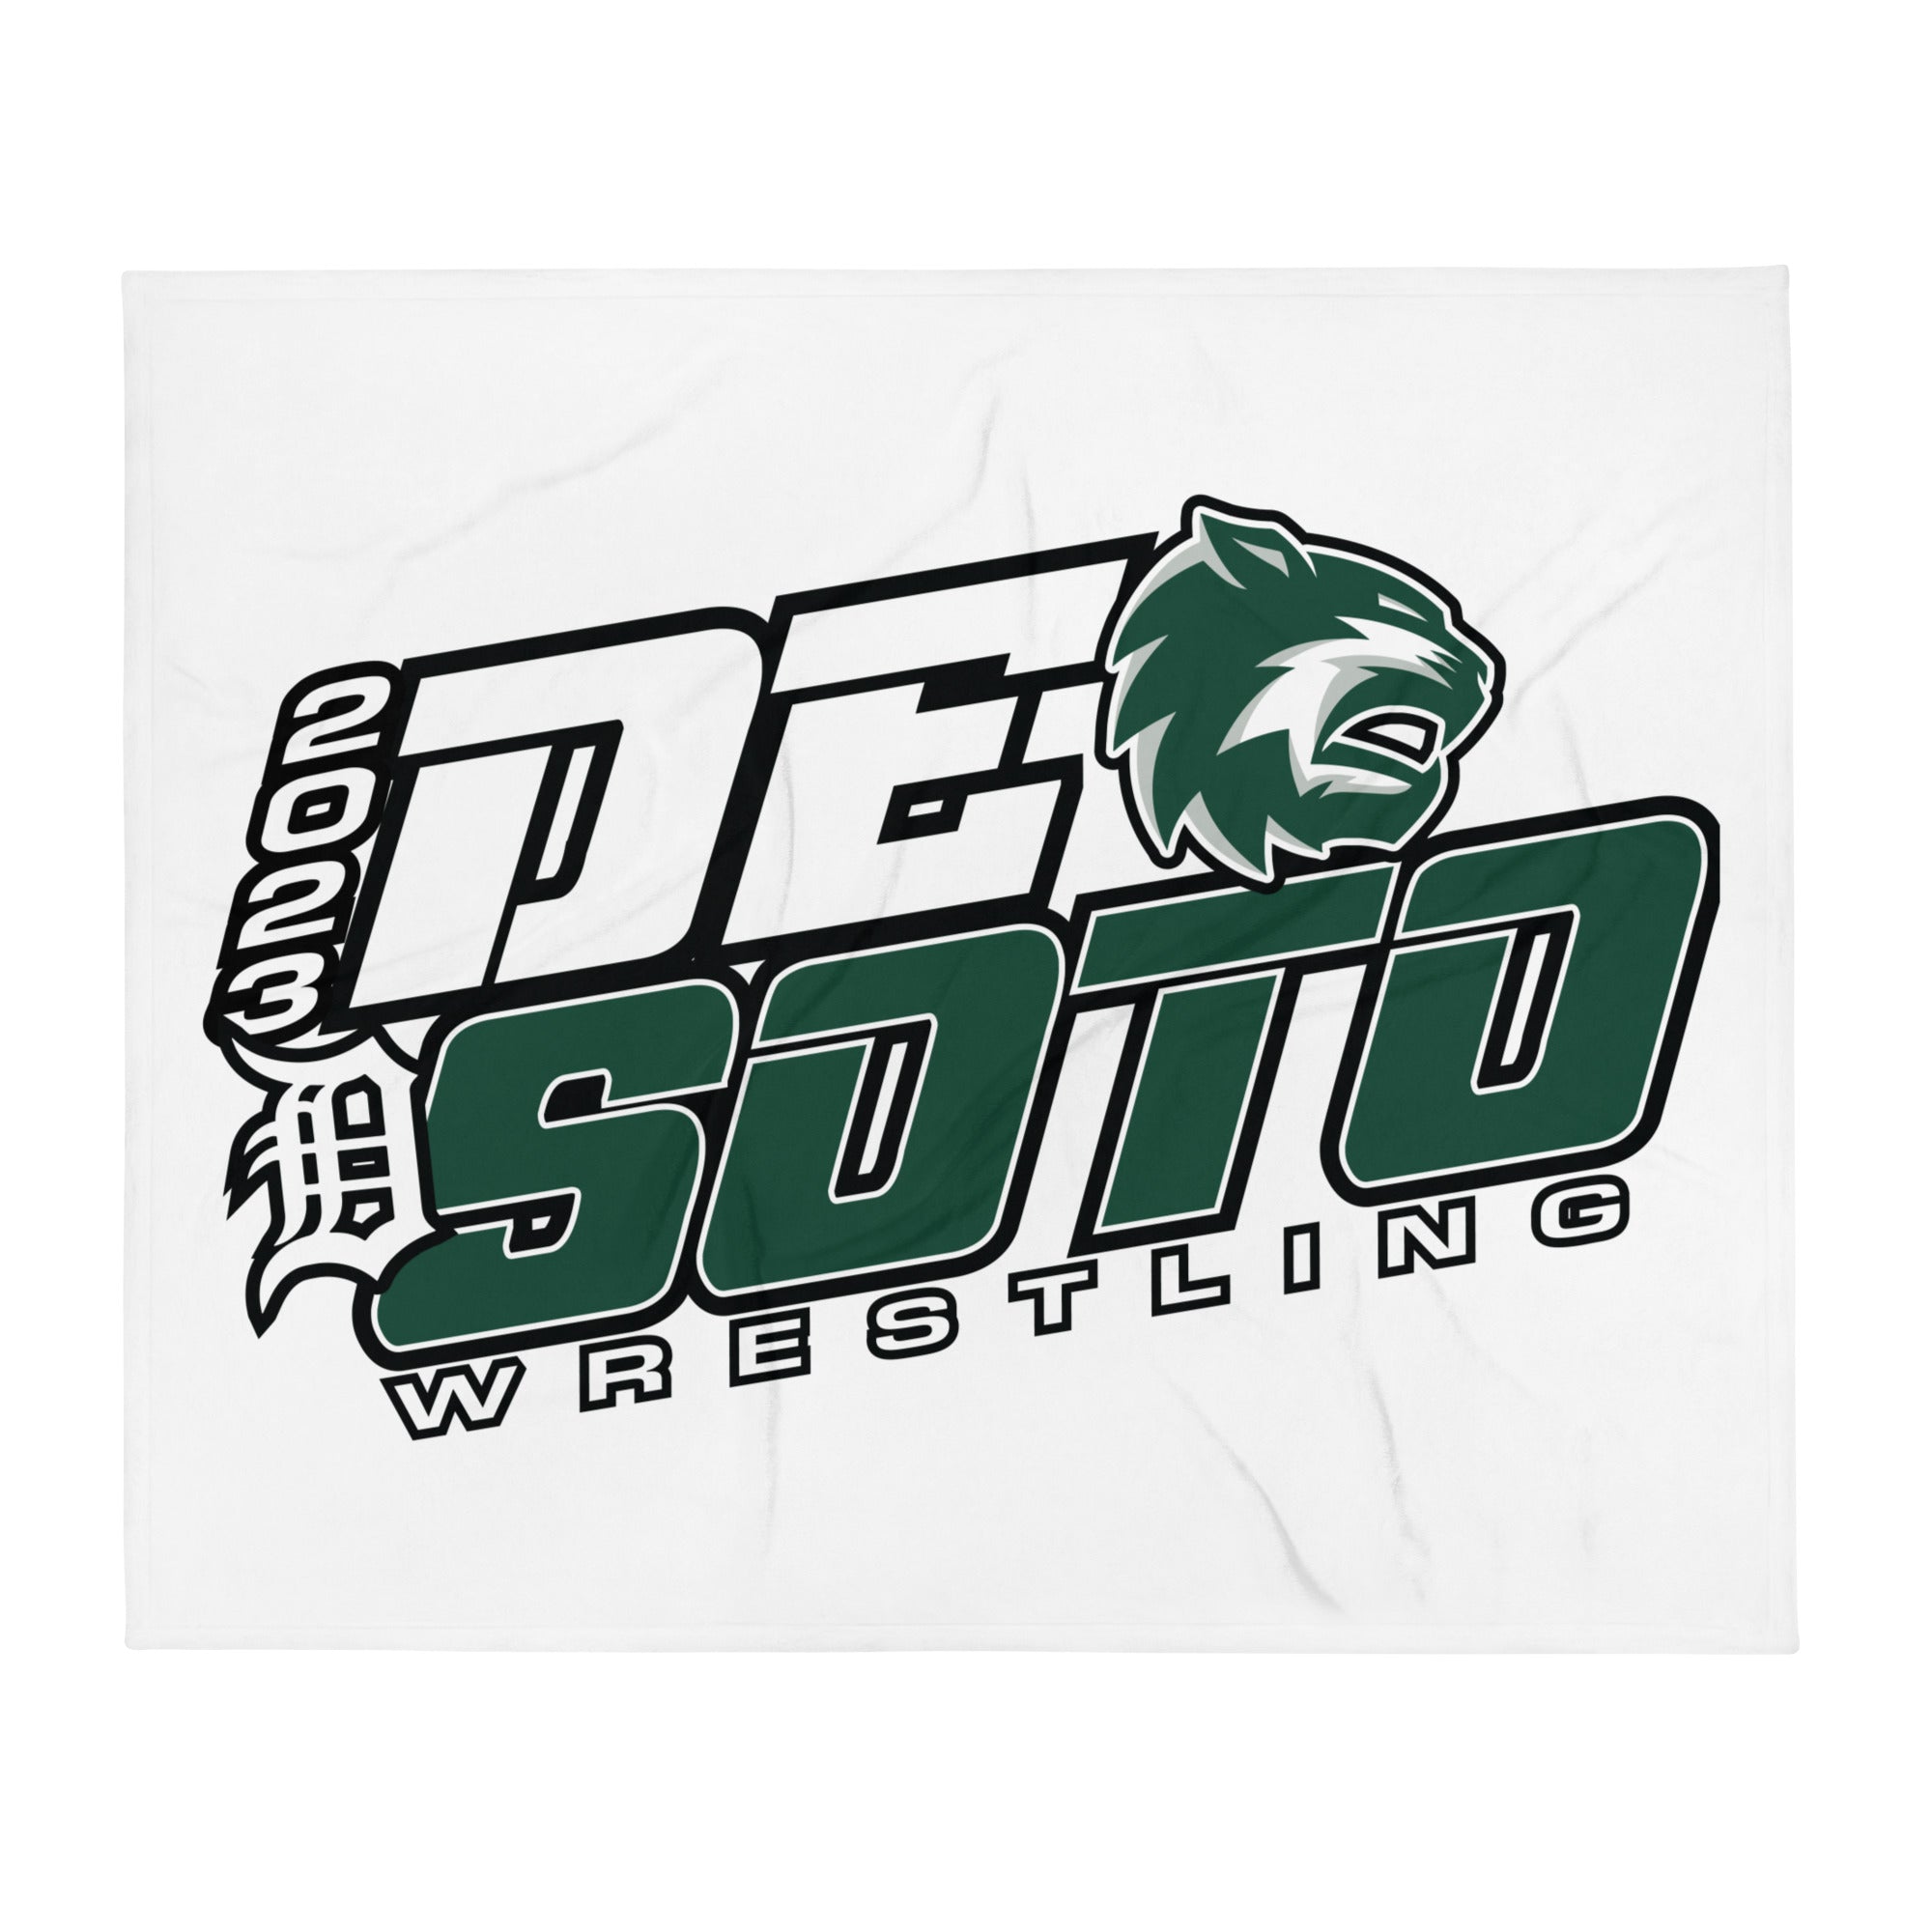 De Soto High School Wrestling Throw Blanket 50 x 60